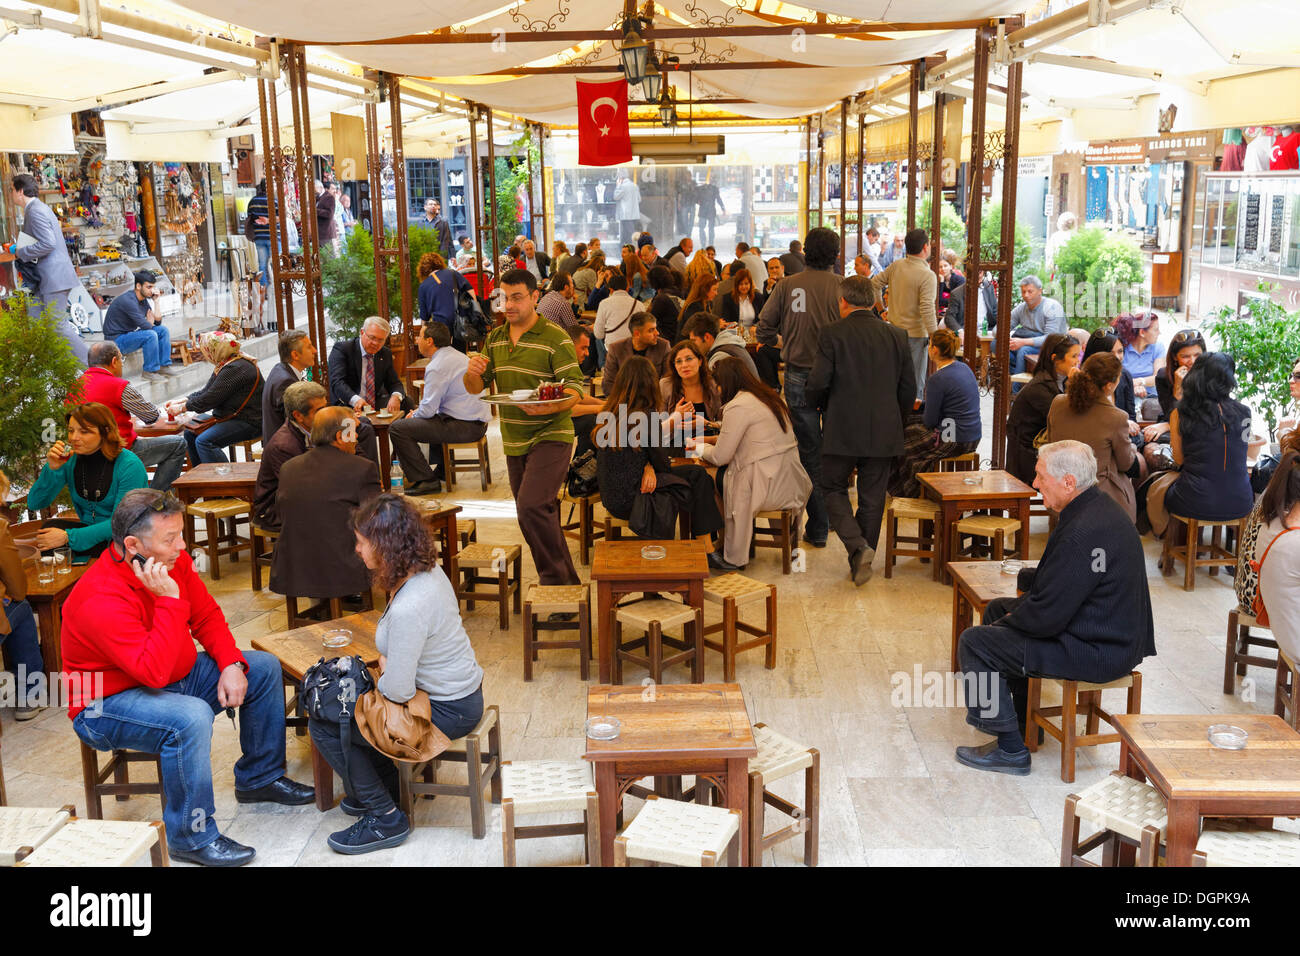 Café in Kizlaragasi Hani Bazaar, Kemeralti, Izmir, İzmir Province, Aegean Region, Turkey Stock Photo